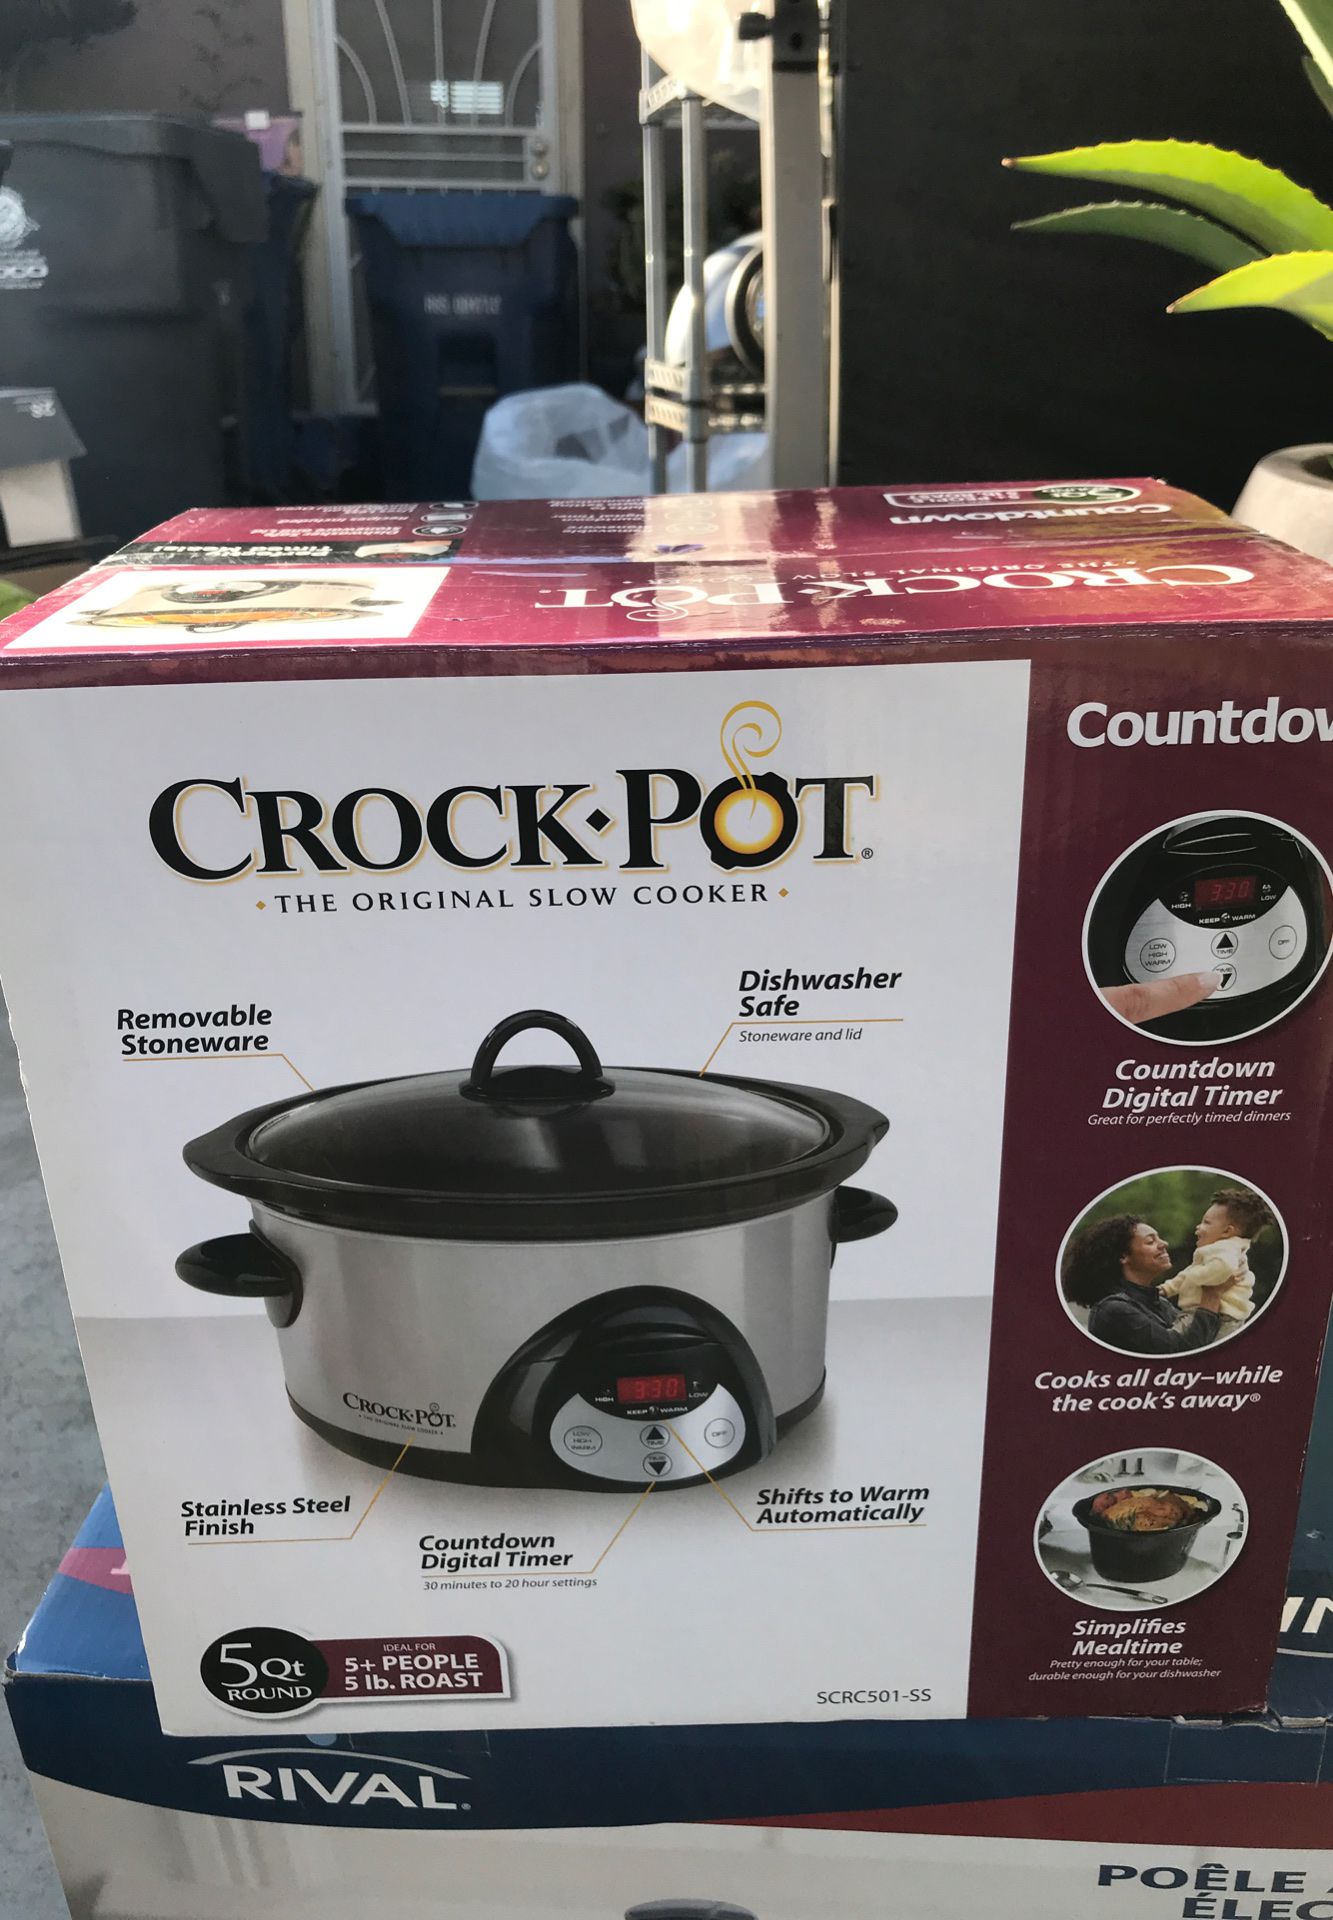 Crock pot